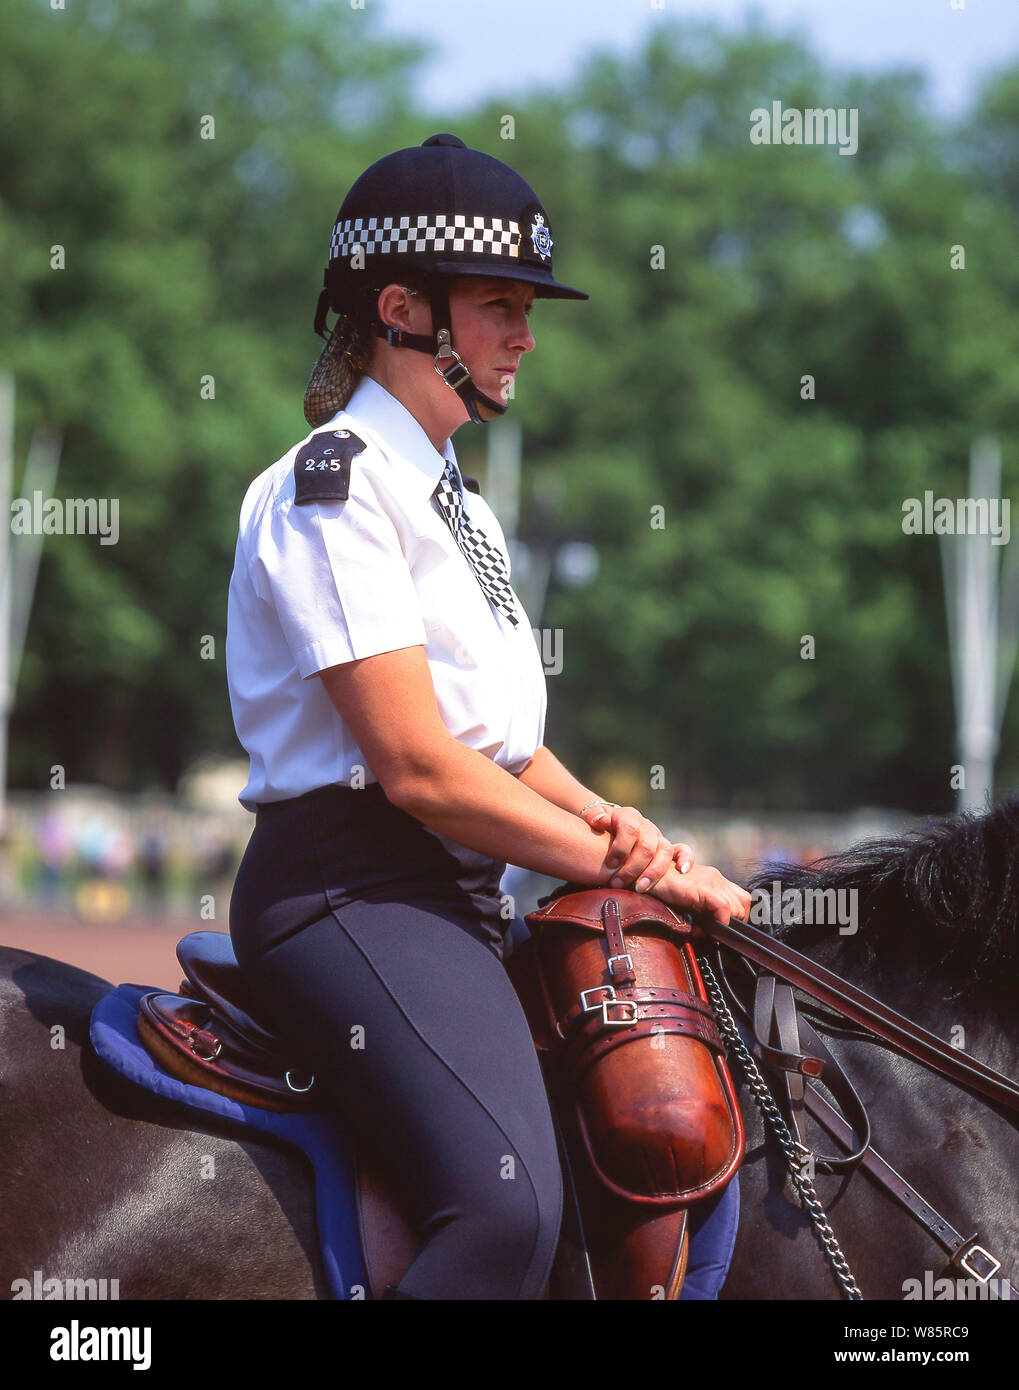 Officier de police Métropolitain monté, défilé des gardes du cheval, Whitehall, Cité de Westminster, Grand Londres, Angleterre, Royaume-Uni Banque D'Images